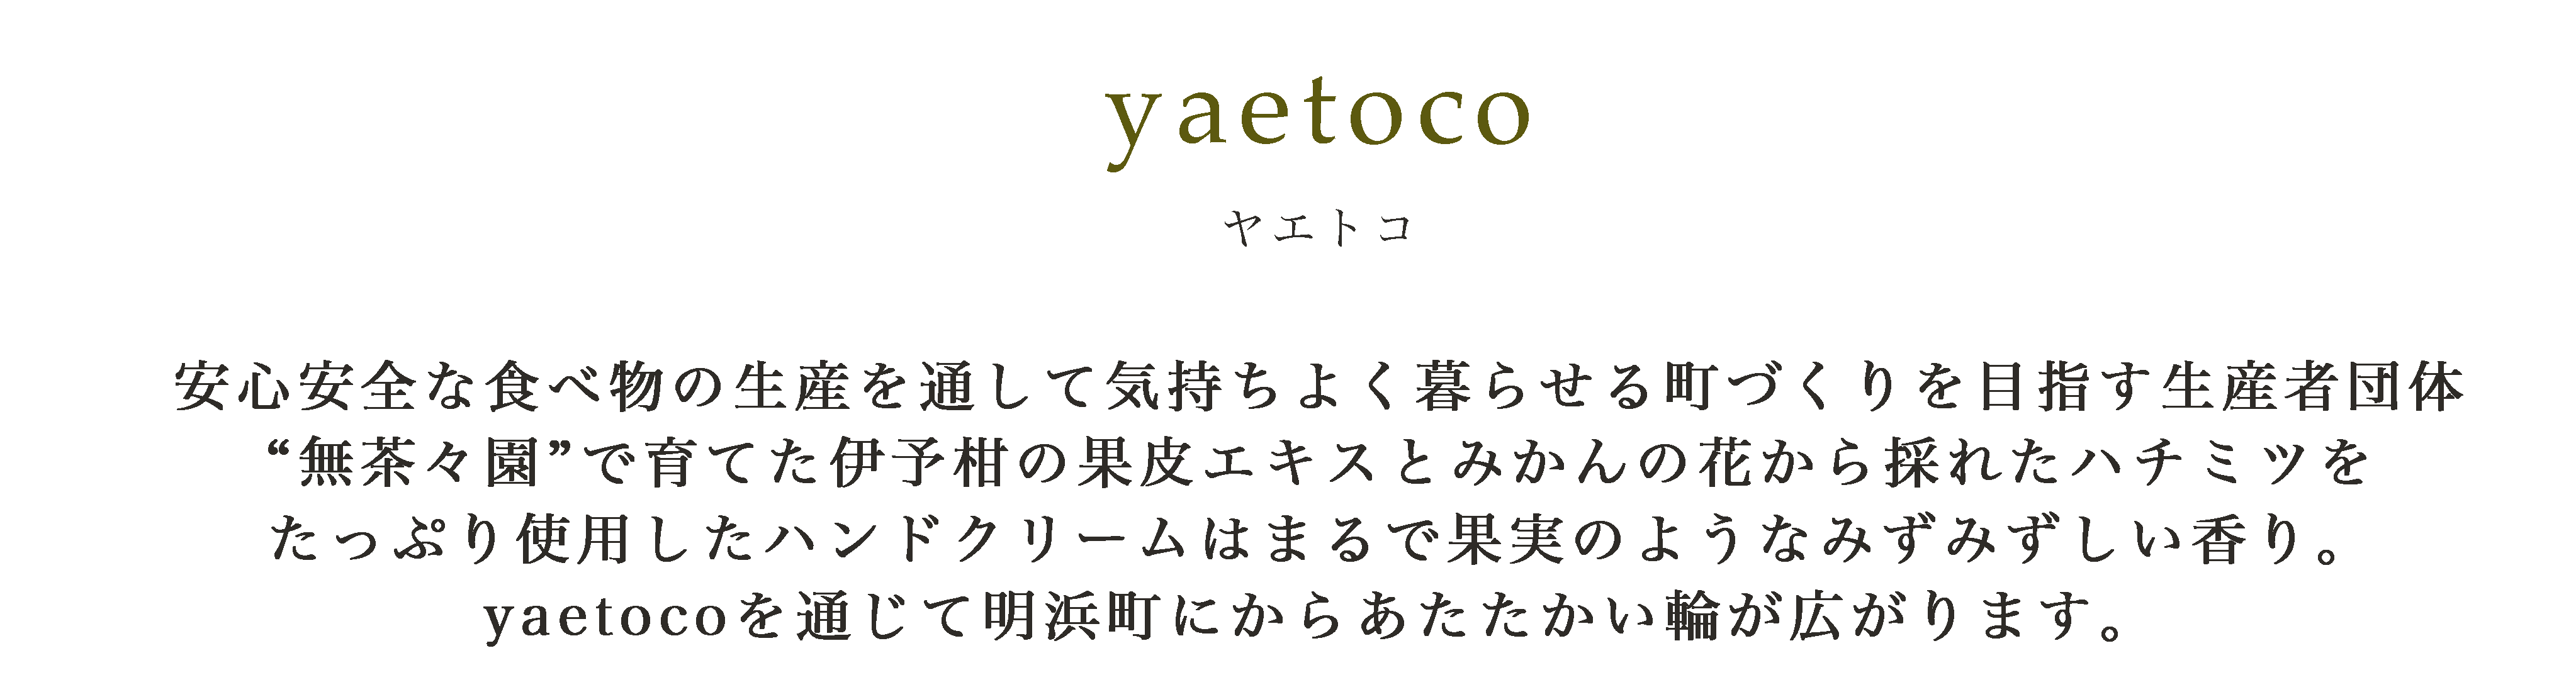 yaetoco